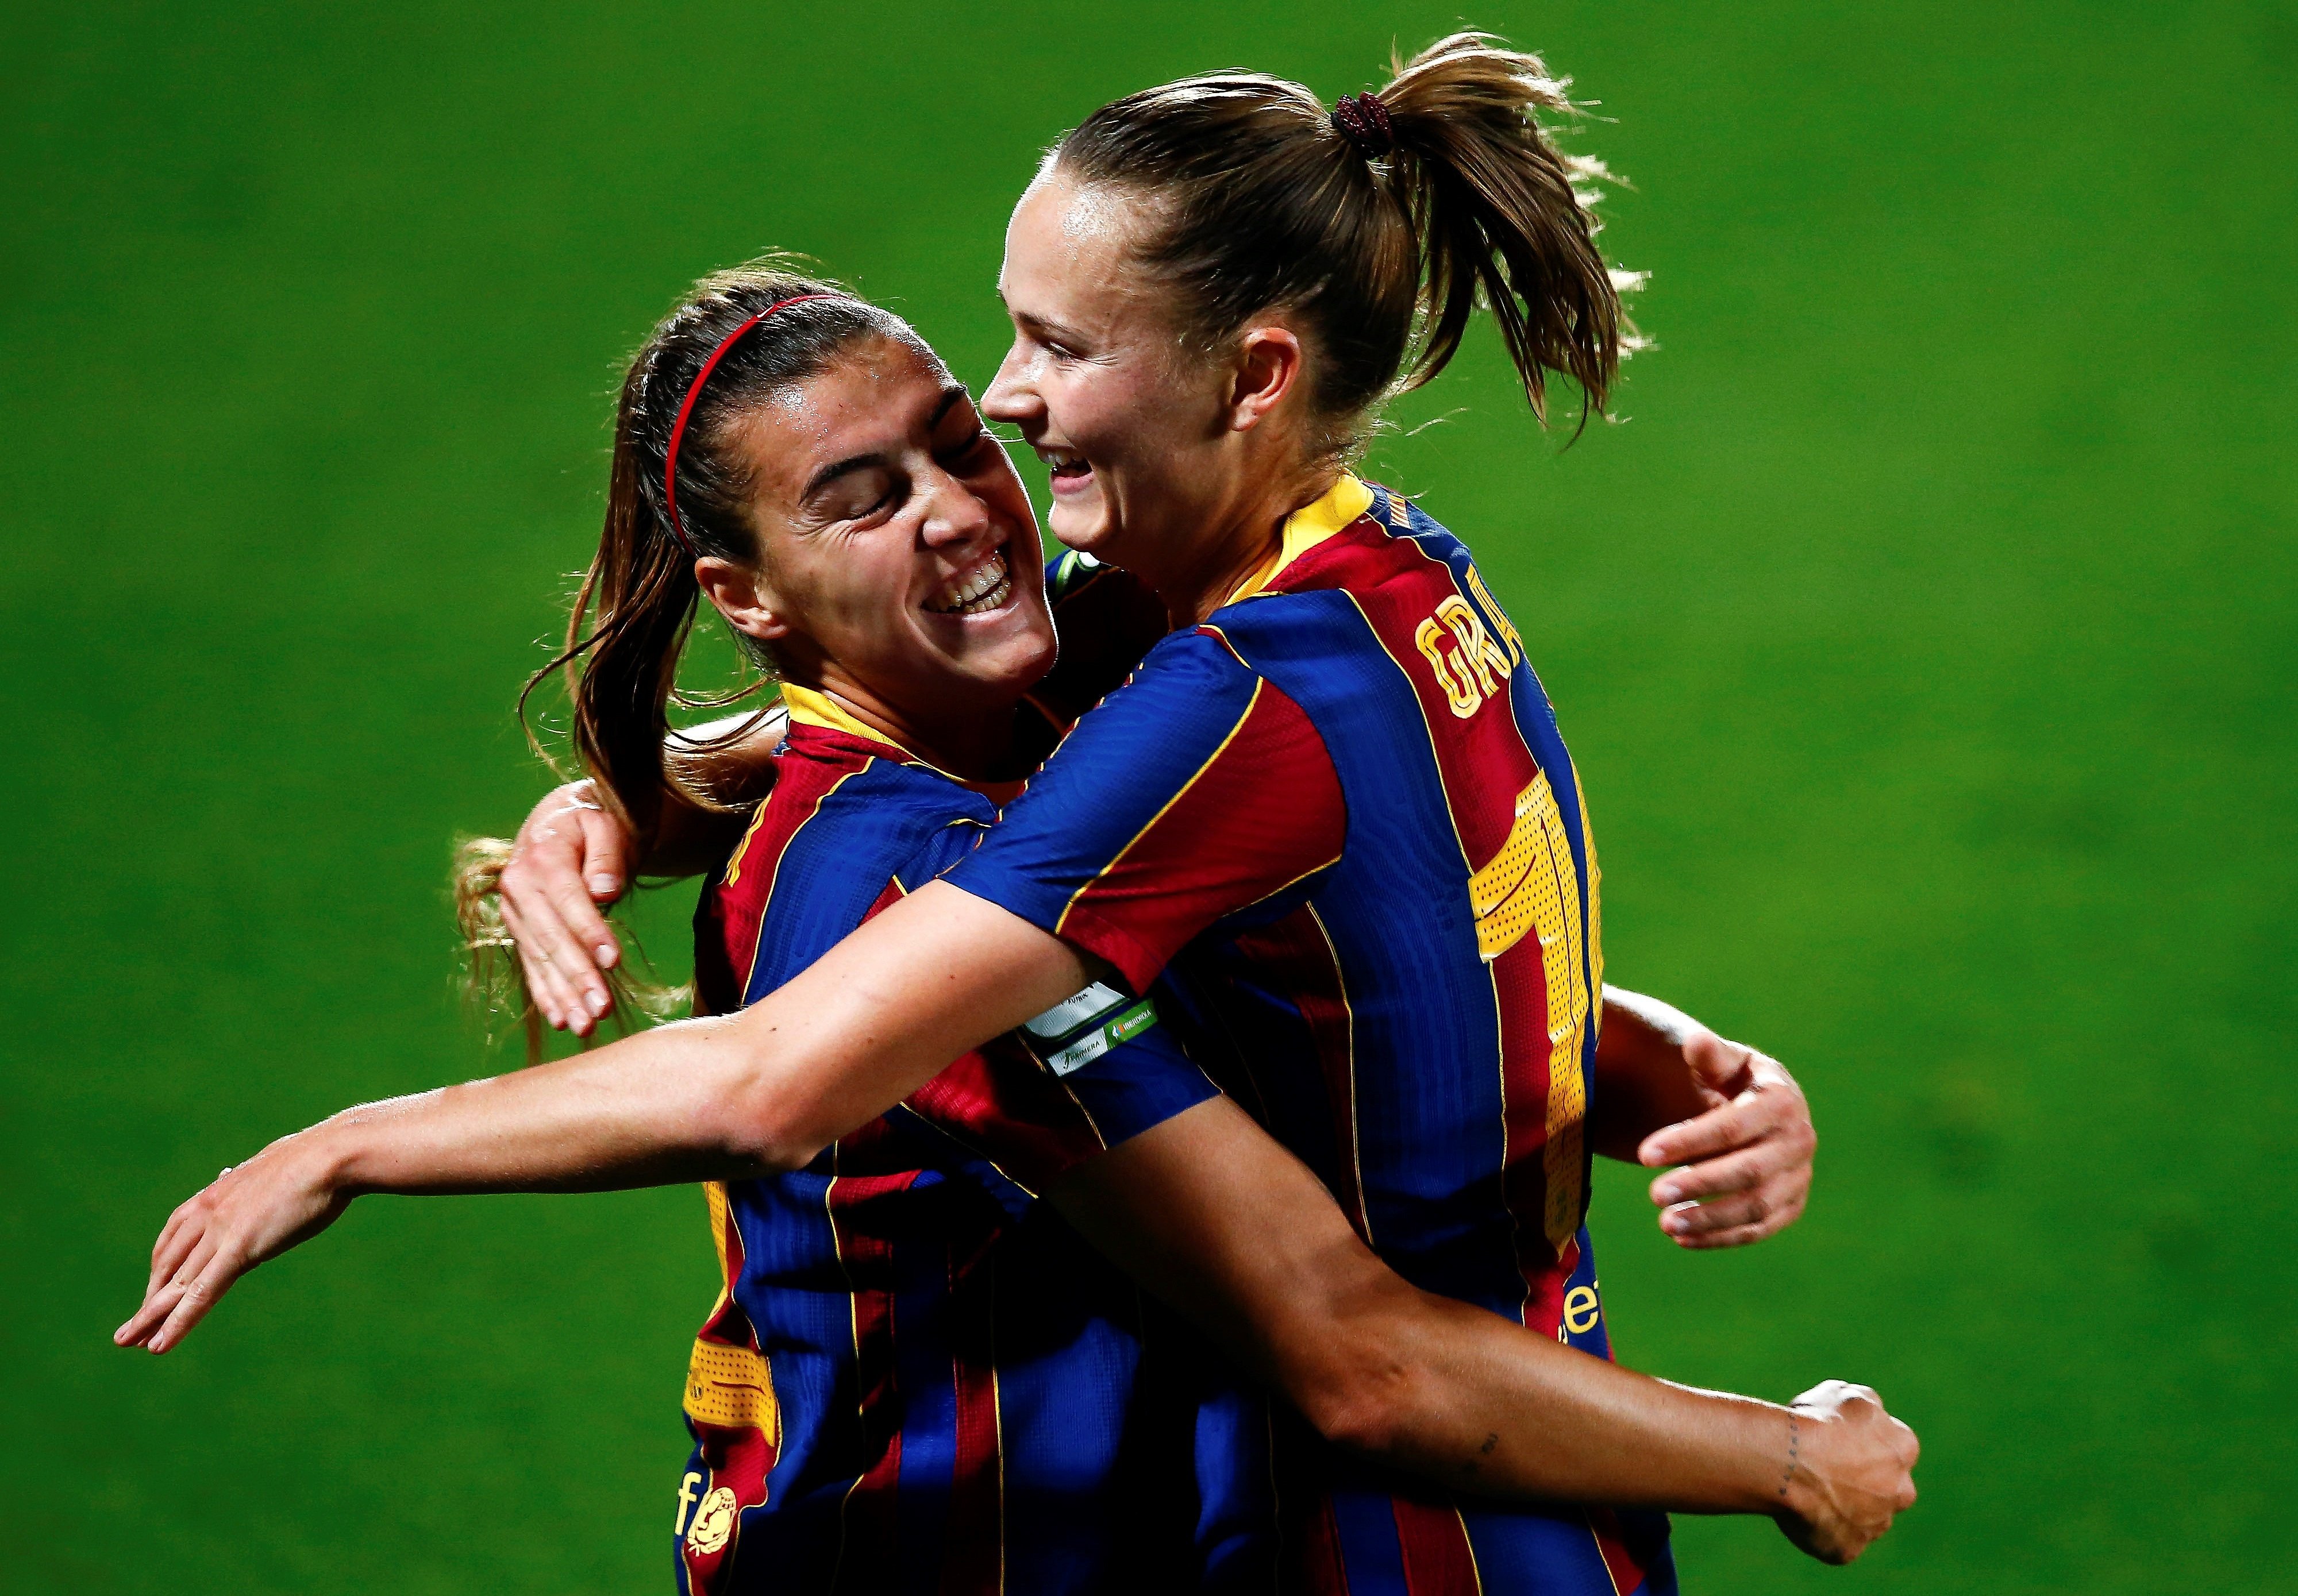 El Barça femenino se supera: repaso al Atlético, liderato y récord (3-0)